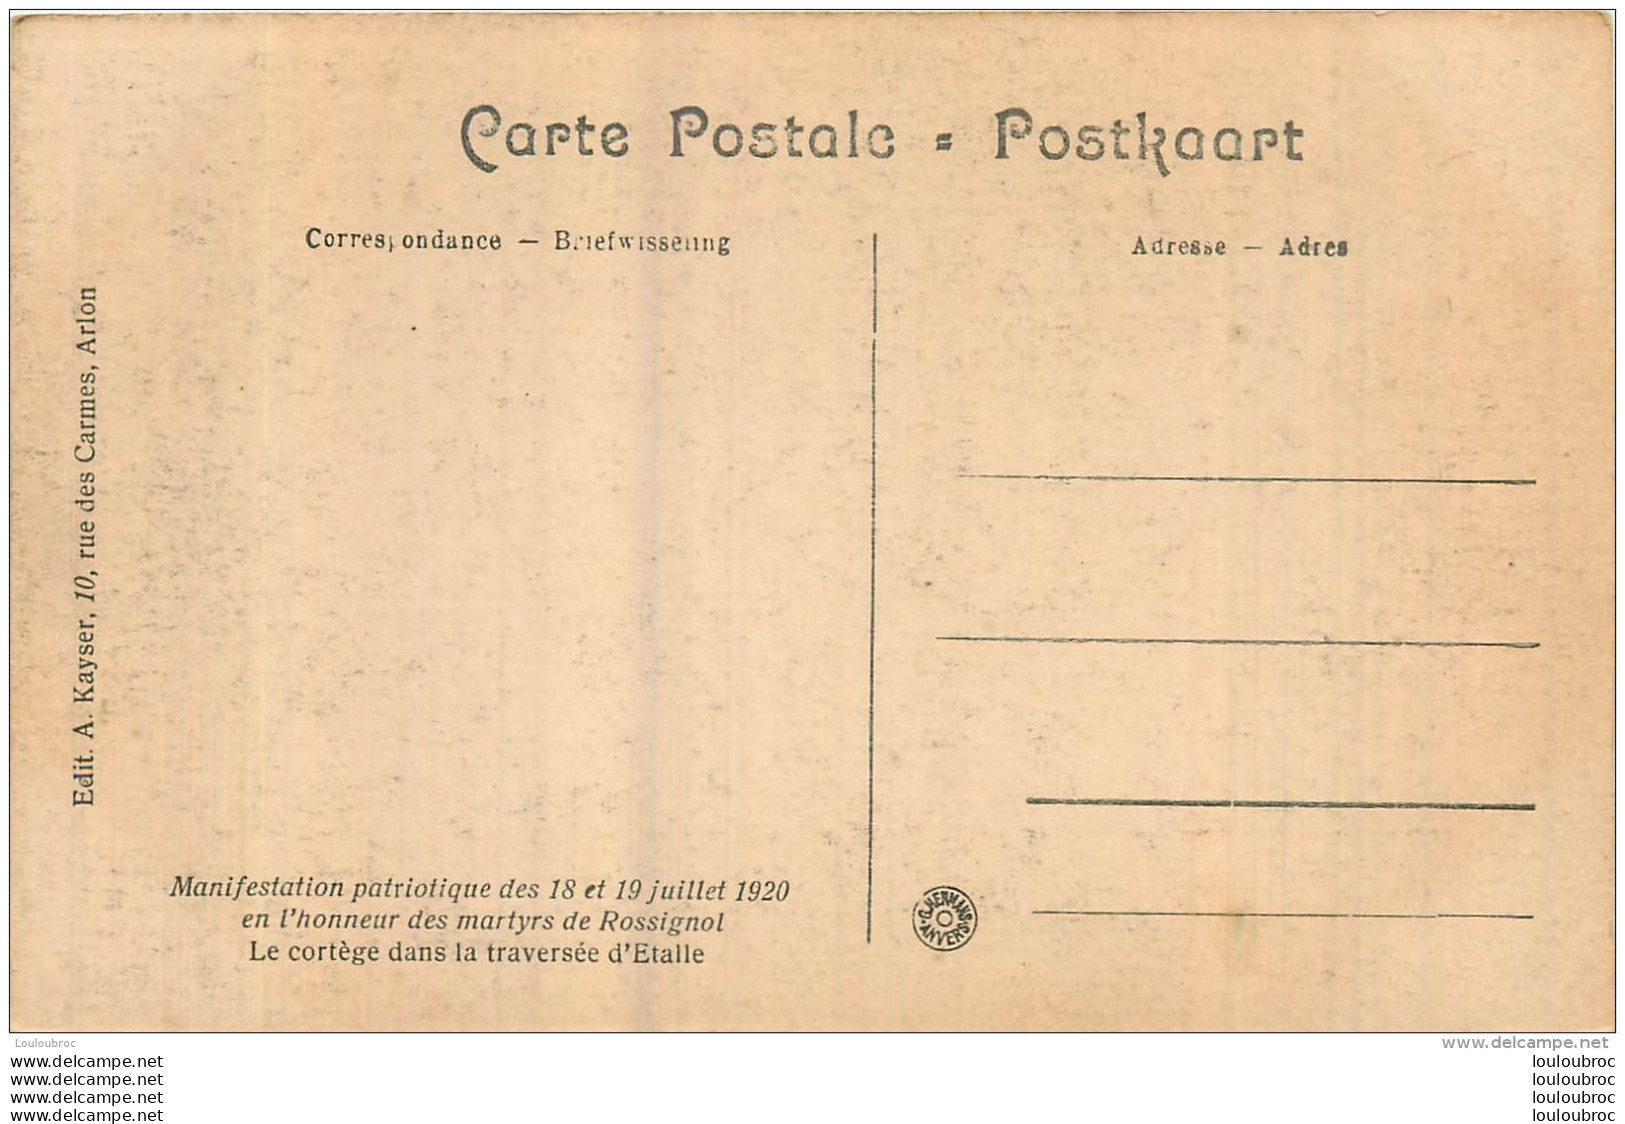 ETALLE TRAVERSEE MANIFESTATION PATRIOTIQUE 1920 EN L'HONNEUR DES MARTYRS DE ROSSIGNOL - Etalle